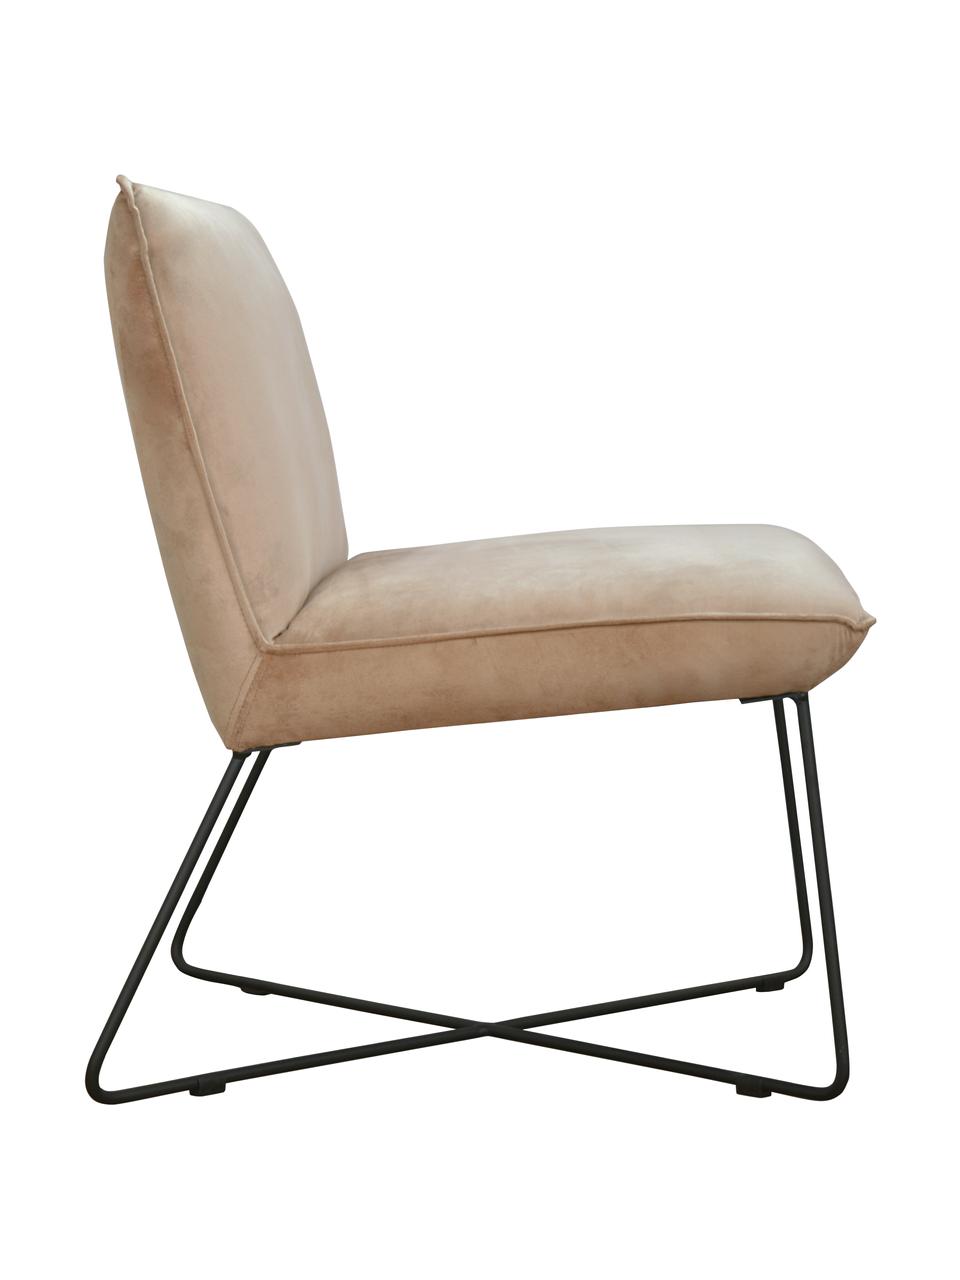 Krzesło tapicerowane z aksamitu Victor, Tapicerka: aksamit (100% poliester), Stelaż: drewno naturalne, Nogi: metal, Beżowy aksamit, S 75 x G 75 cm